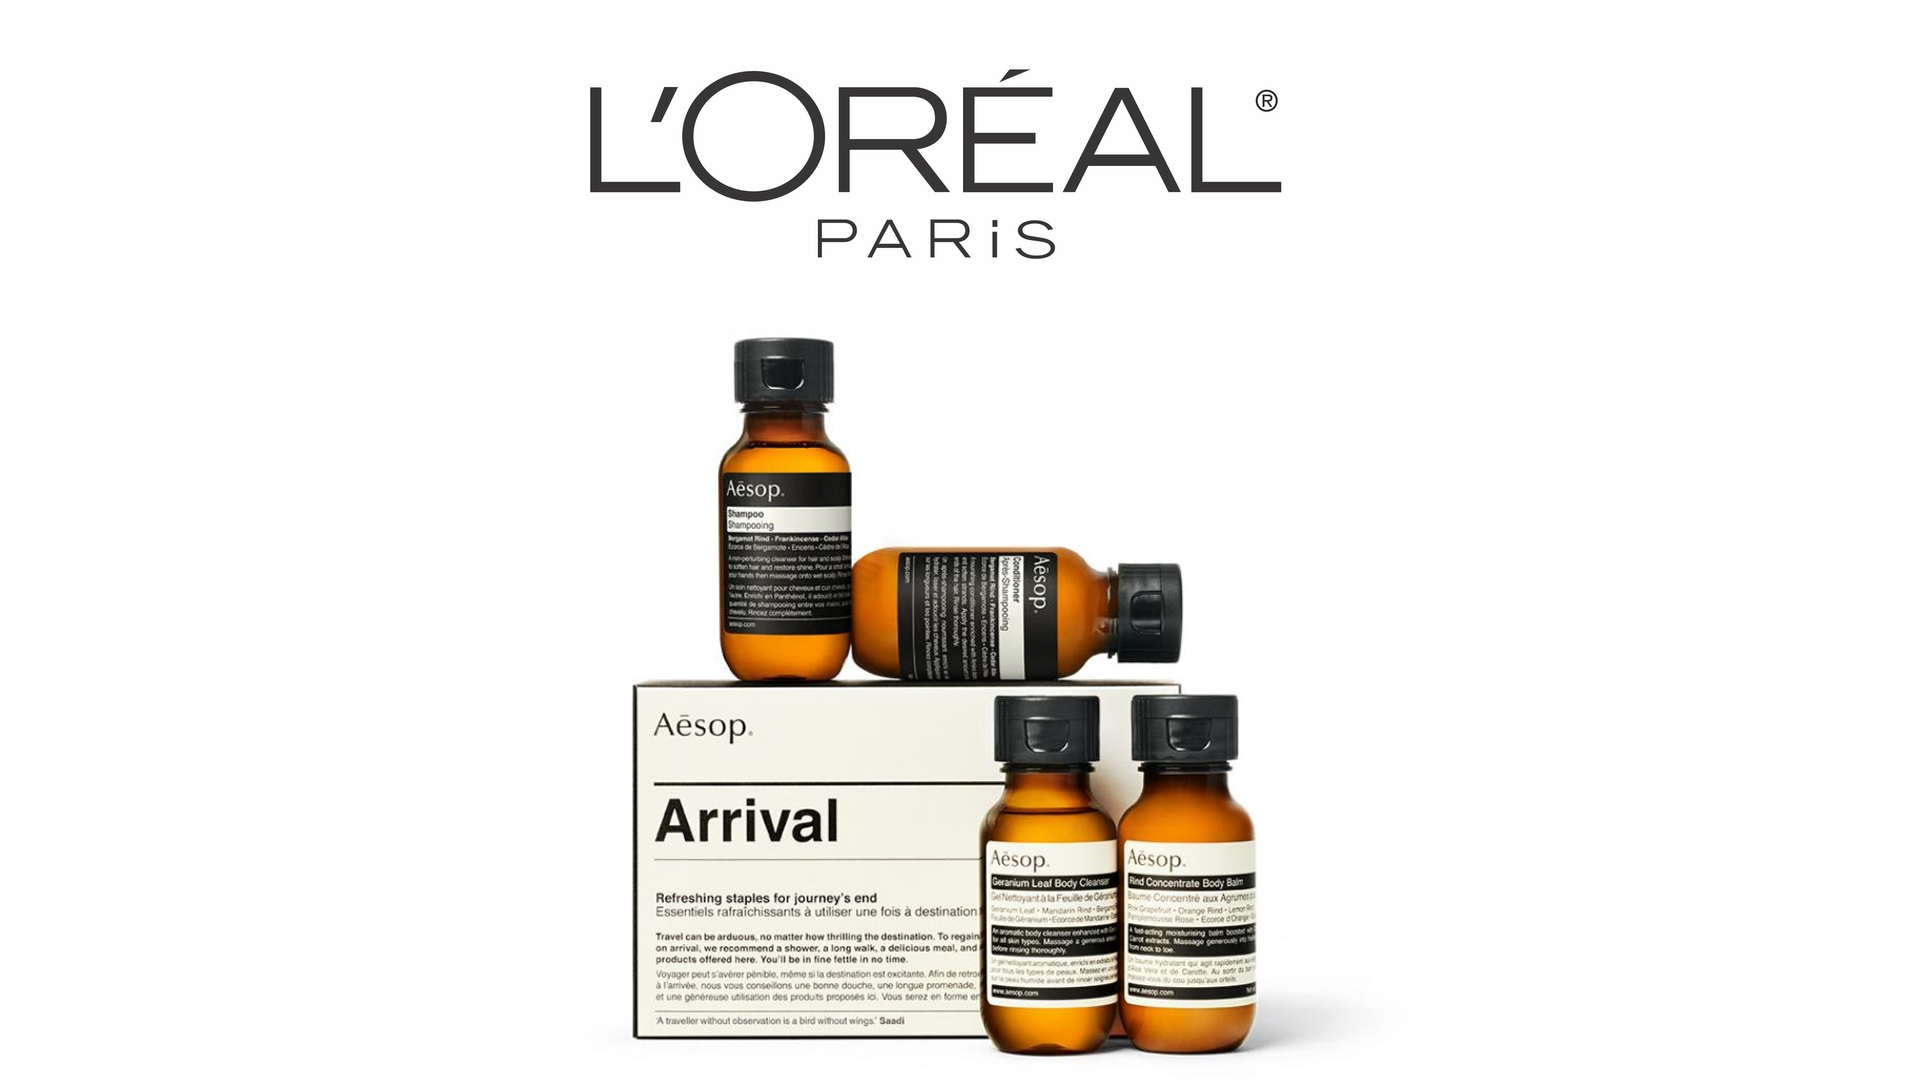 Kiehl's - L'Oréal Group - L'Oréal Luxe Division